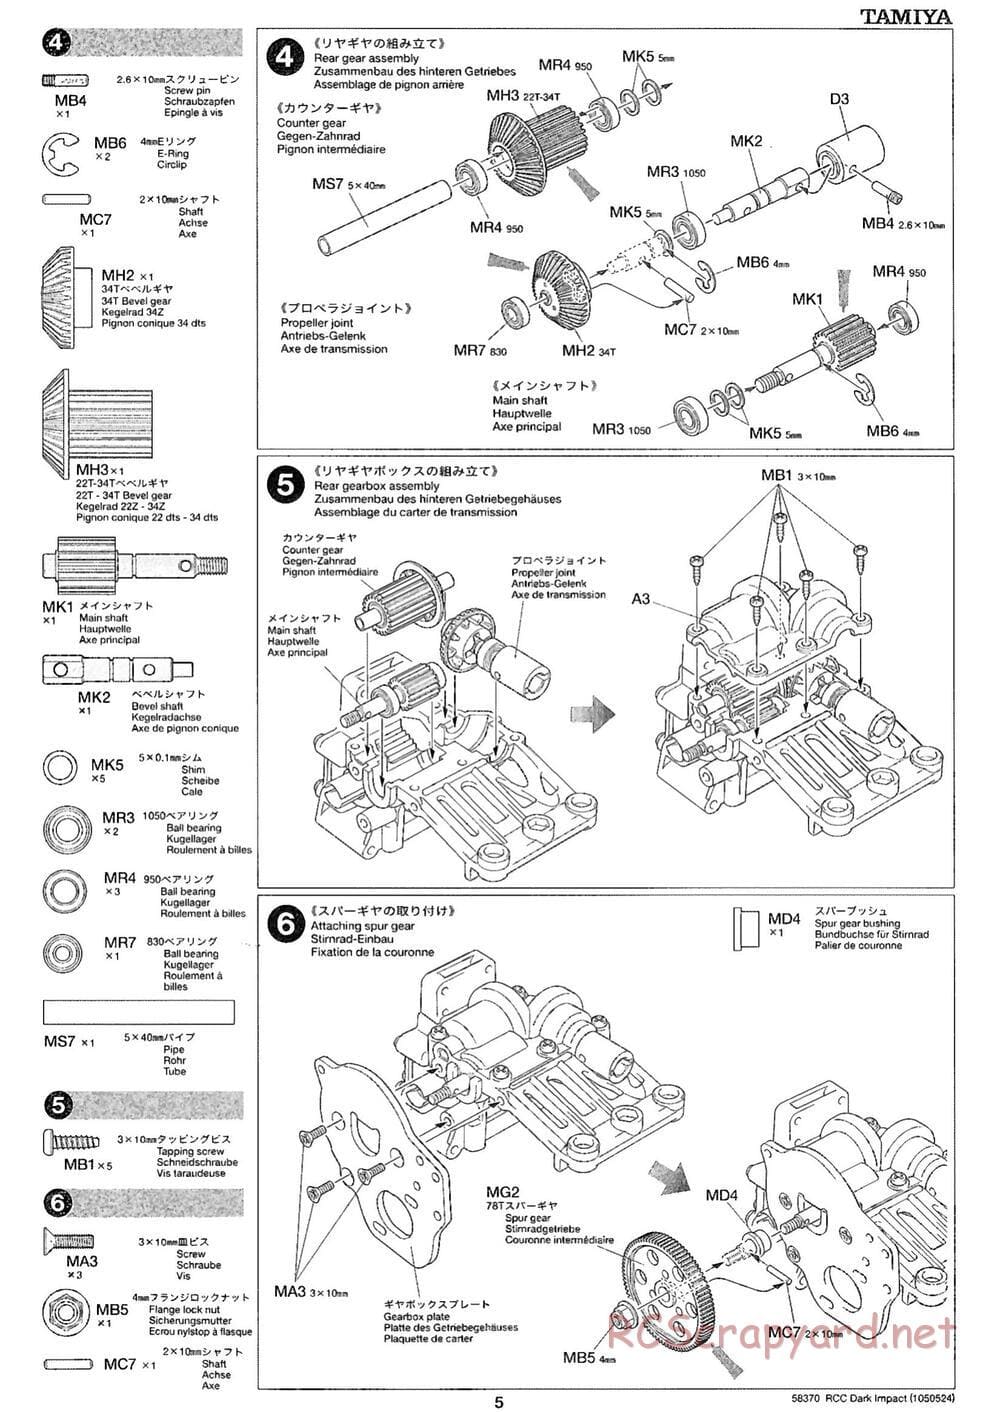 Tamiya - Dark Impact Chassis - Manual - Page 5